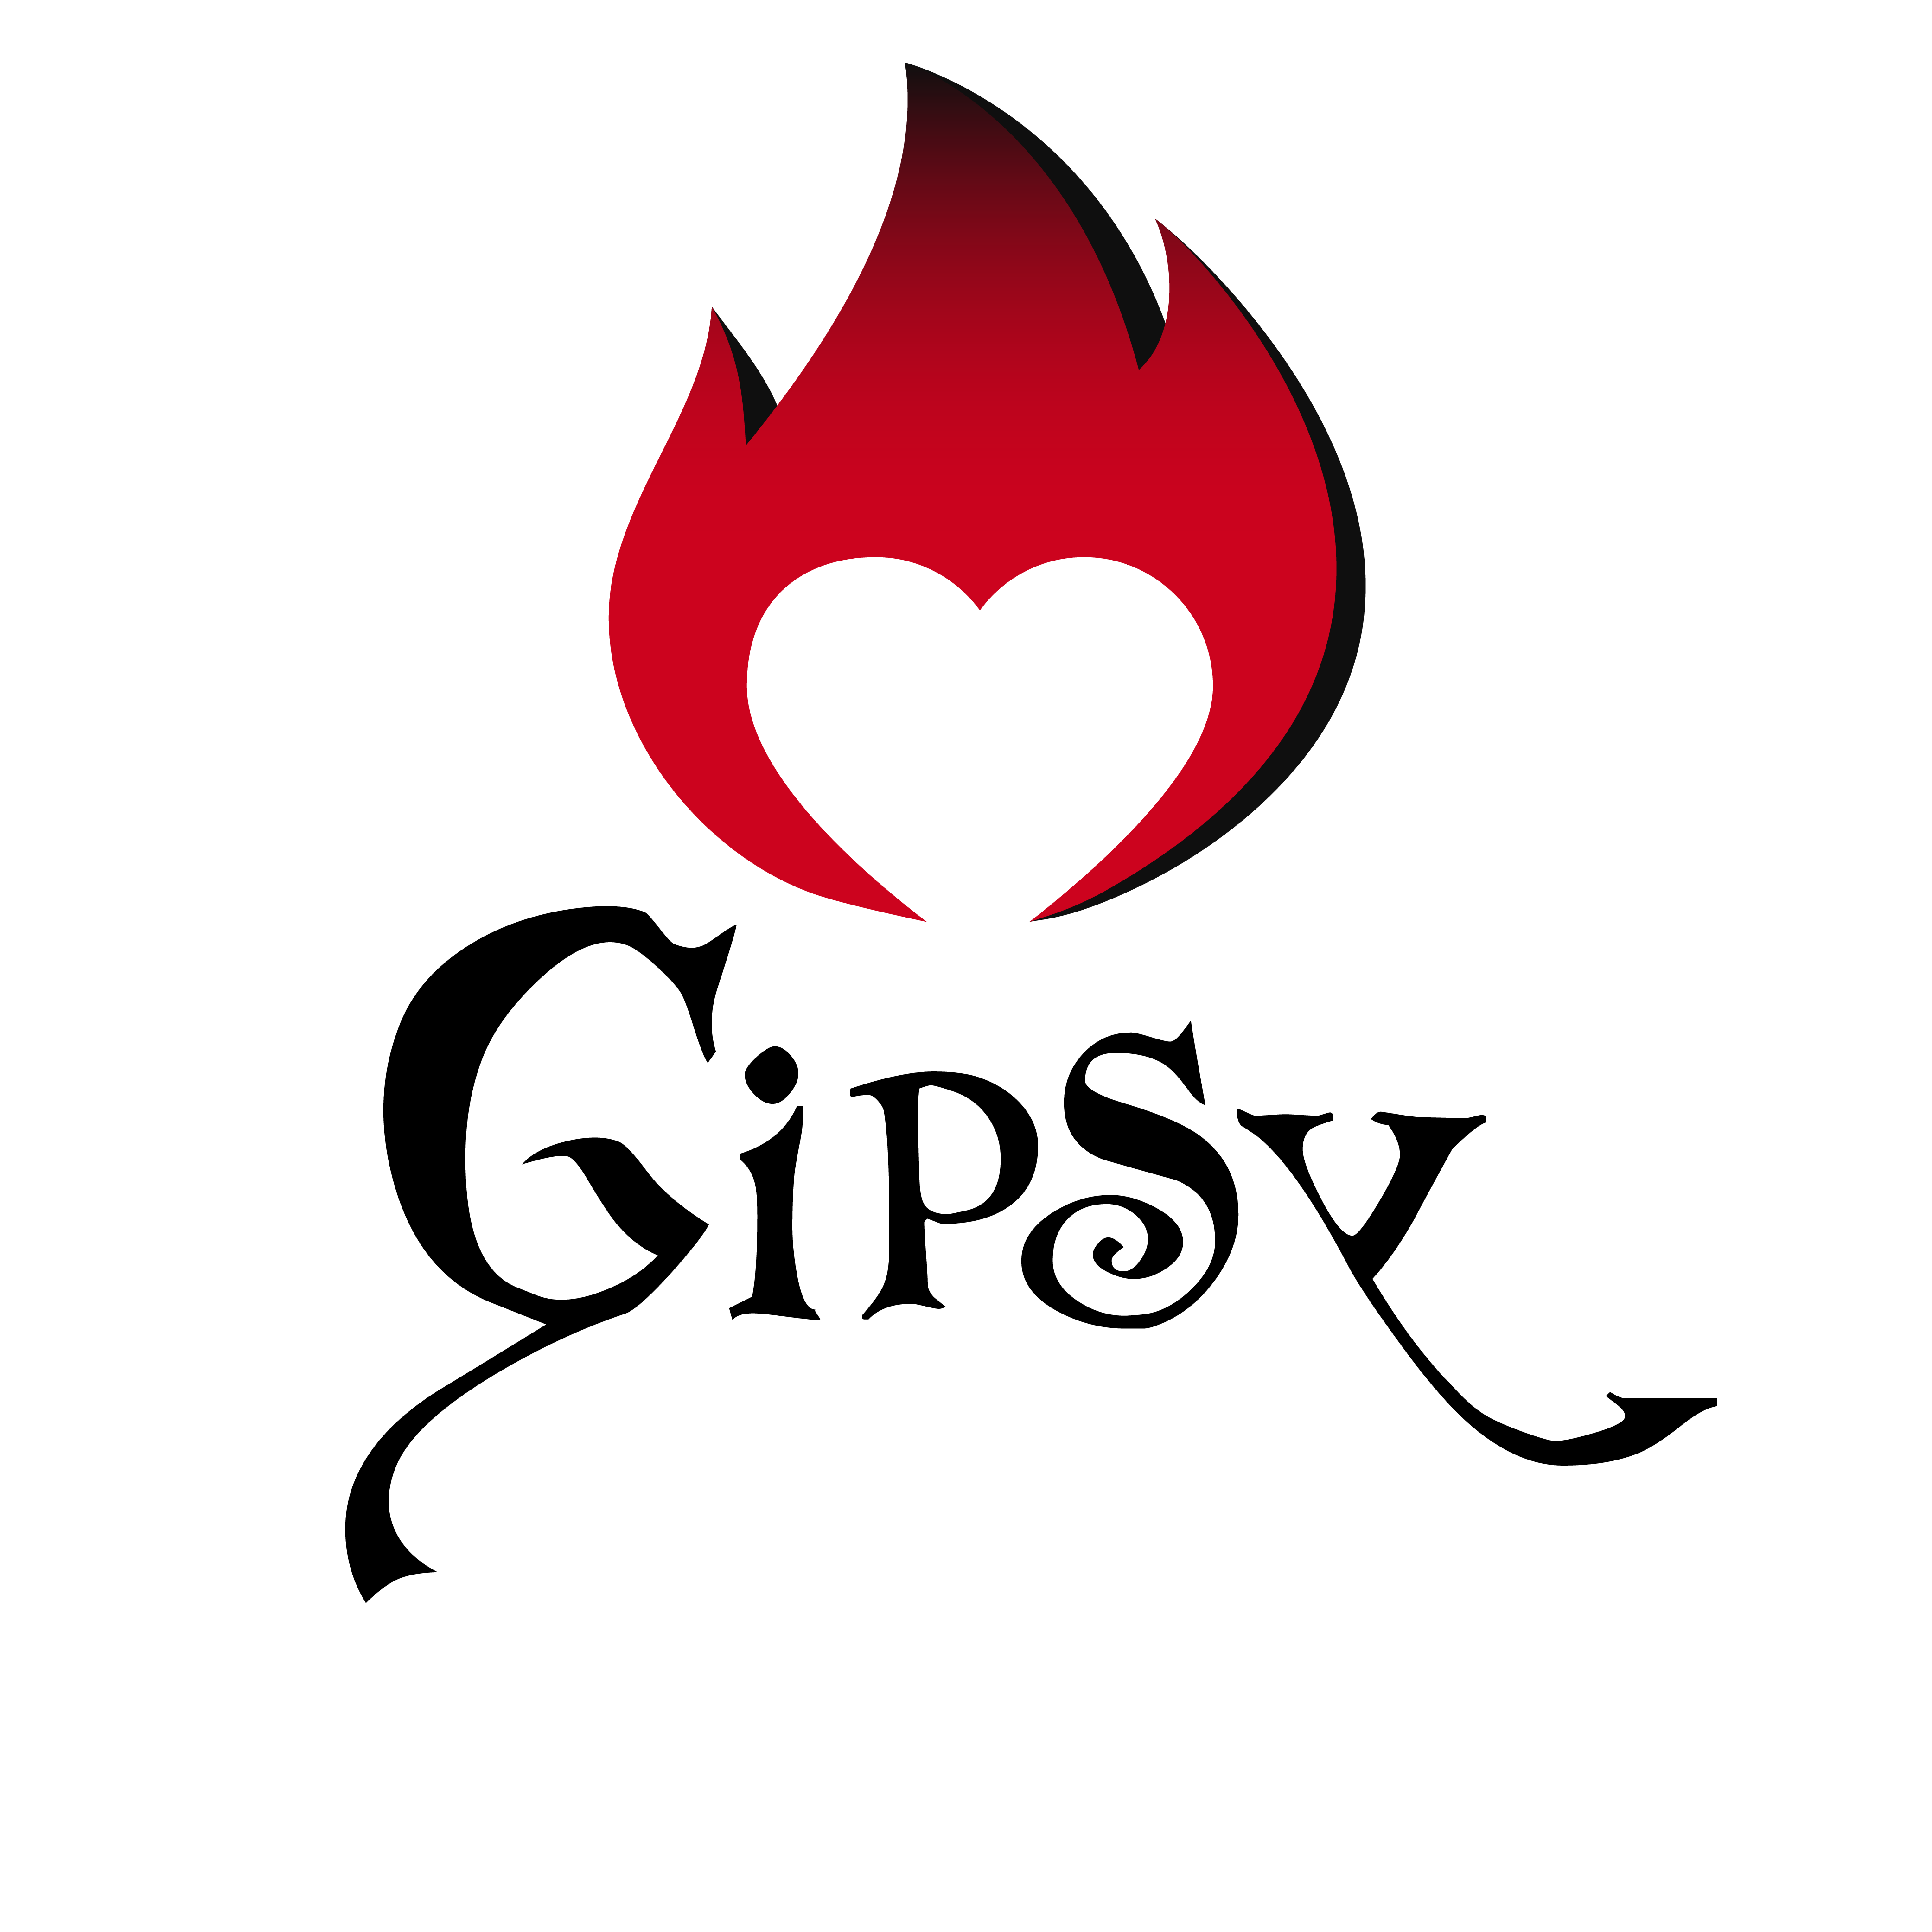 Foto 4 - Gipsy: da giovedì 16 maggio è on line “Serial Lover”, il nuovo videoclip della cantautrice Marta Fiorucci in arte Gipsy